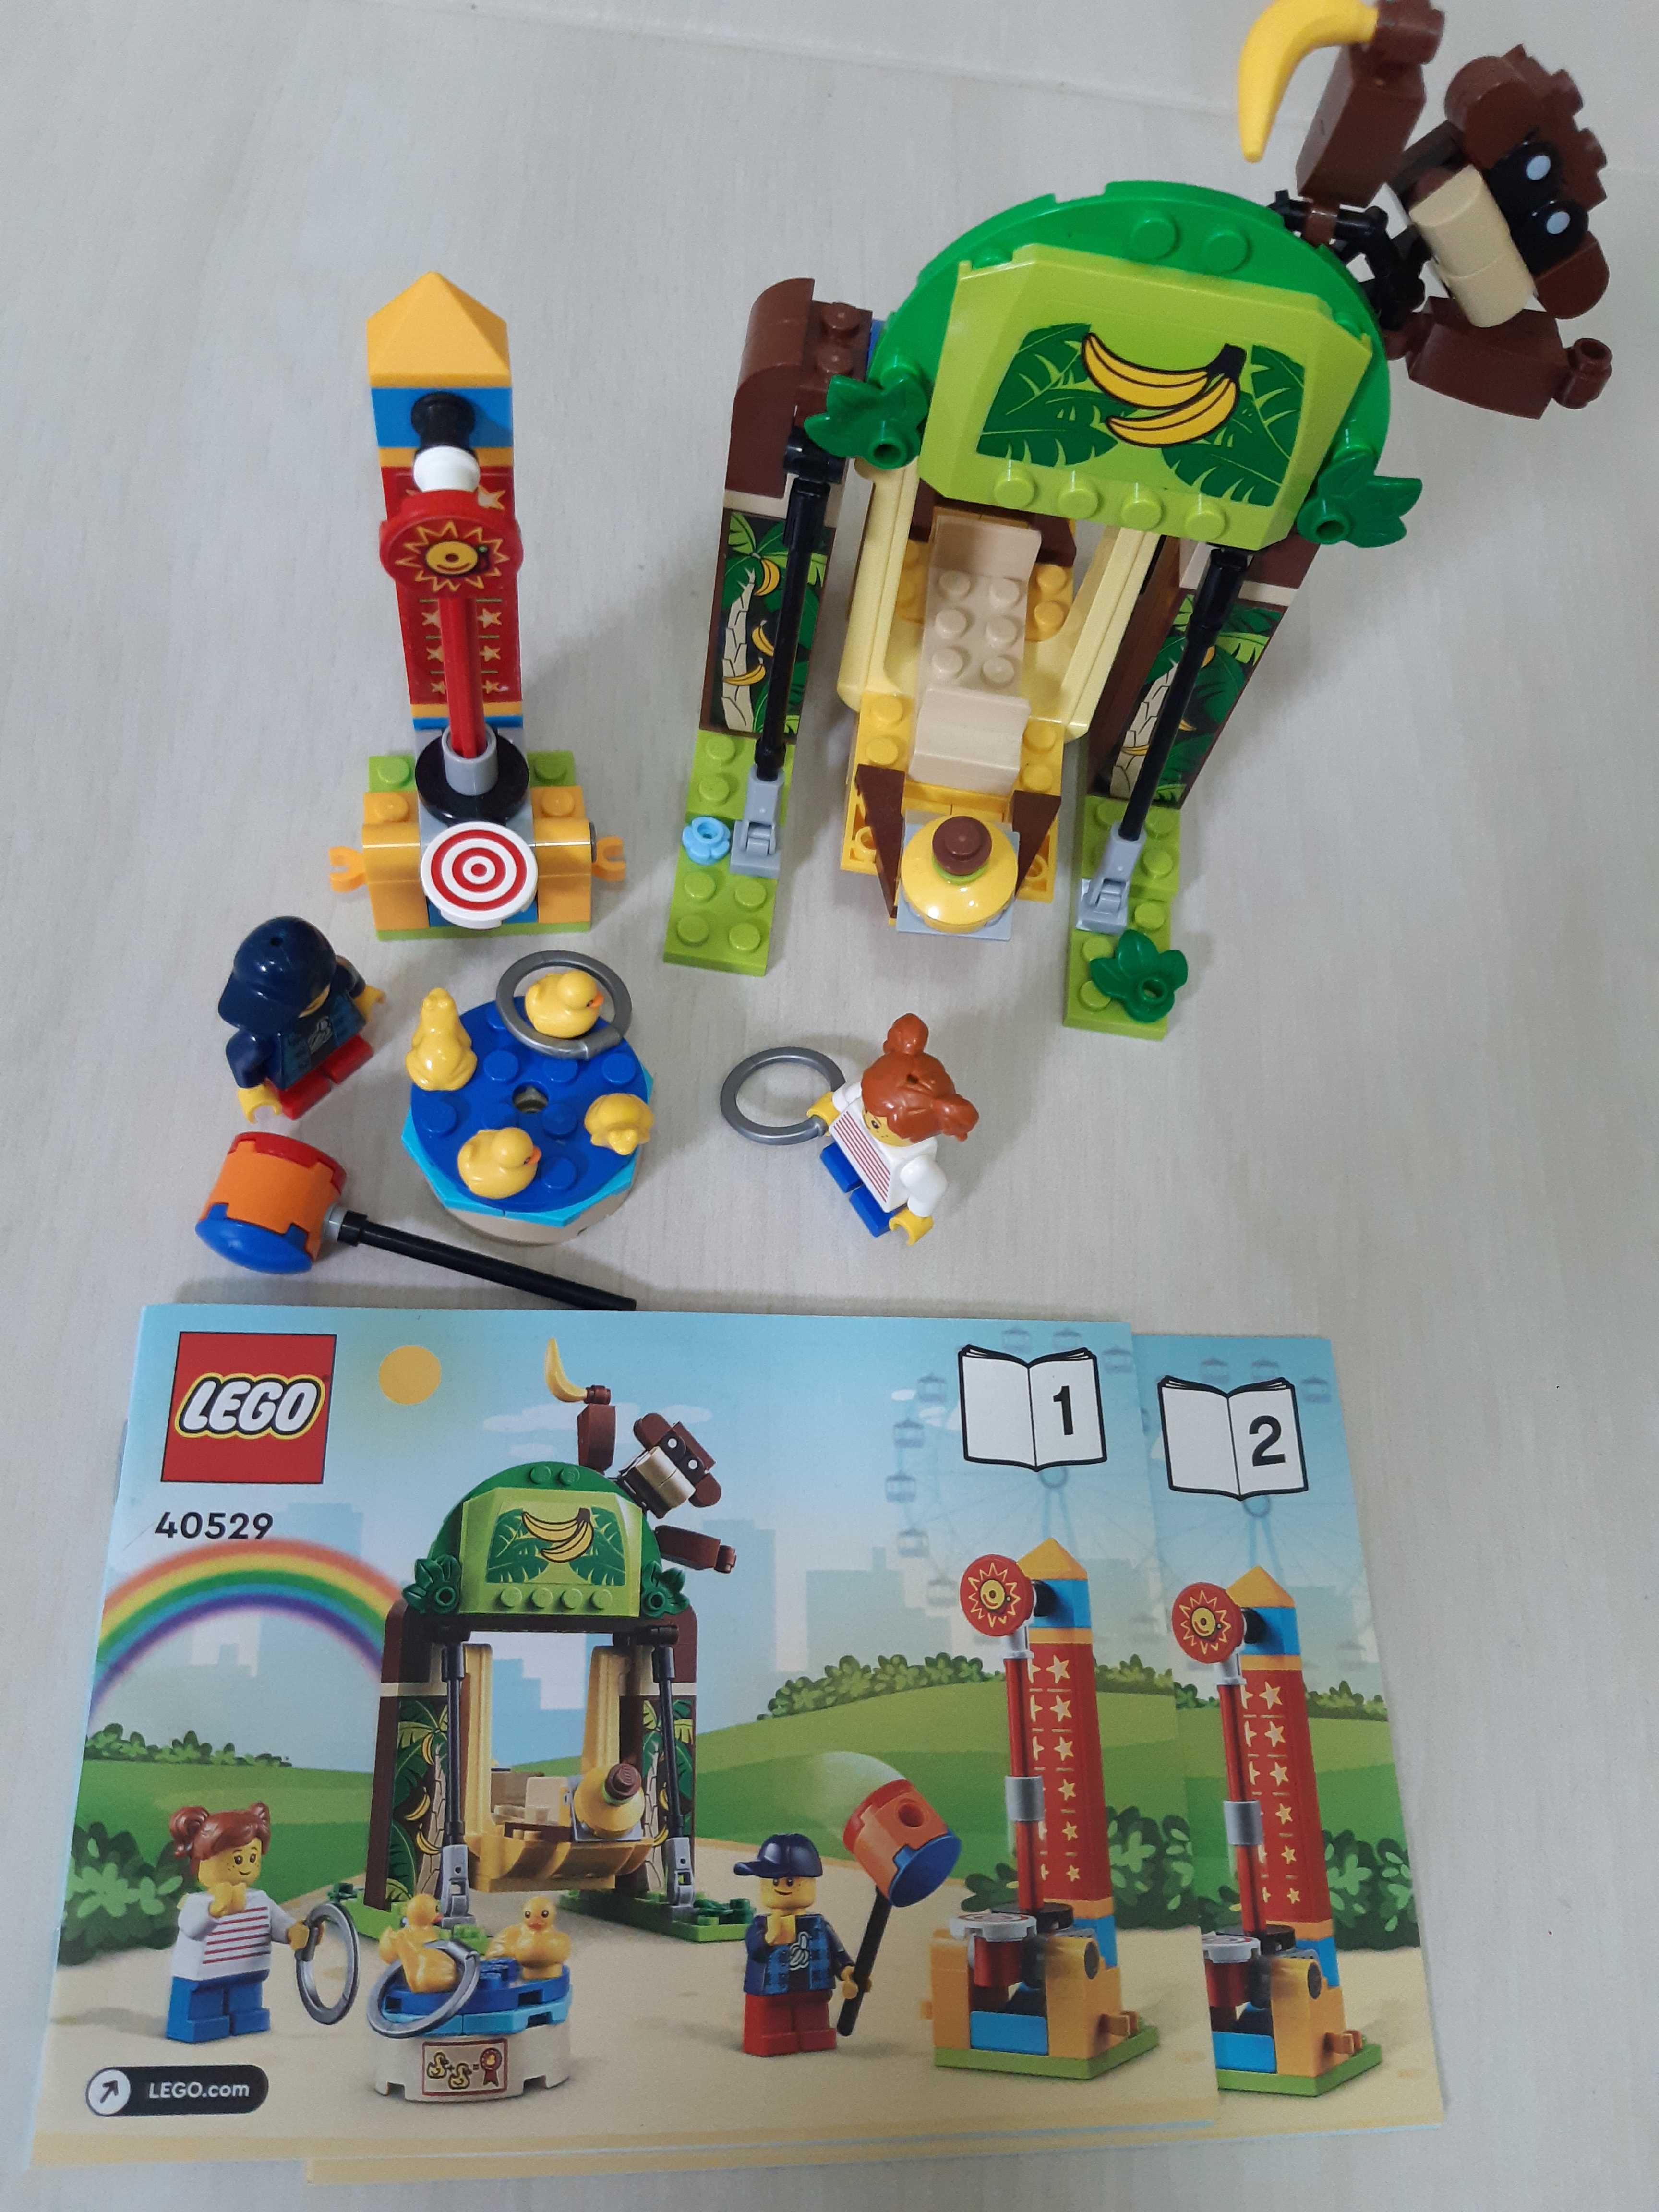 Lego 40529 parcul de distractii